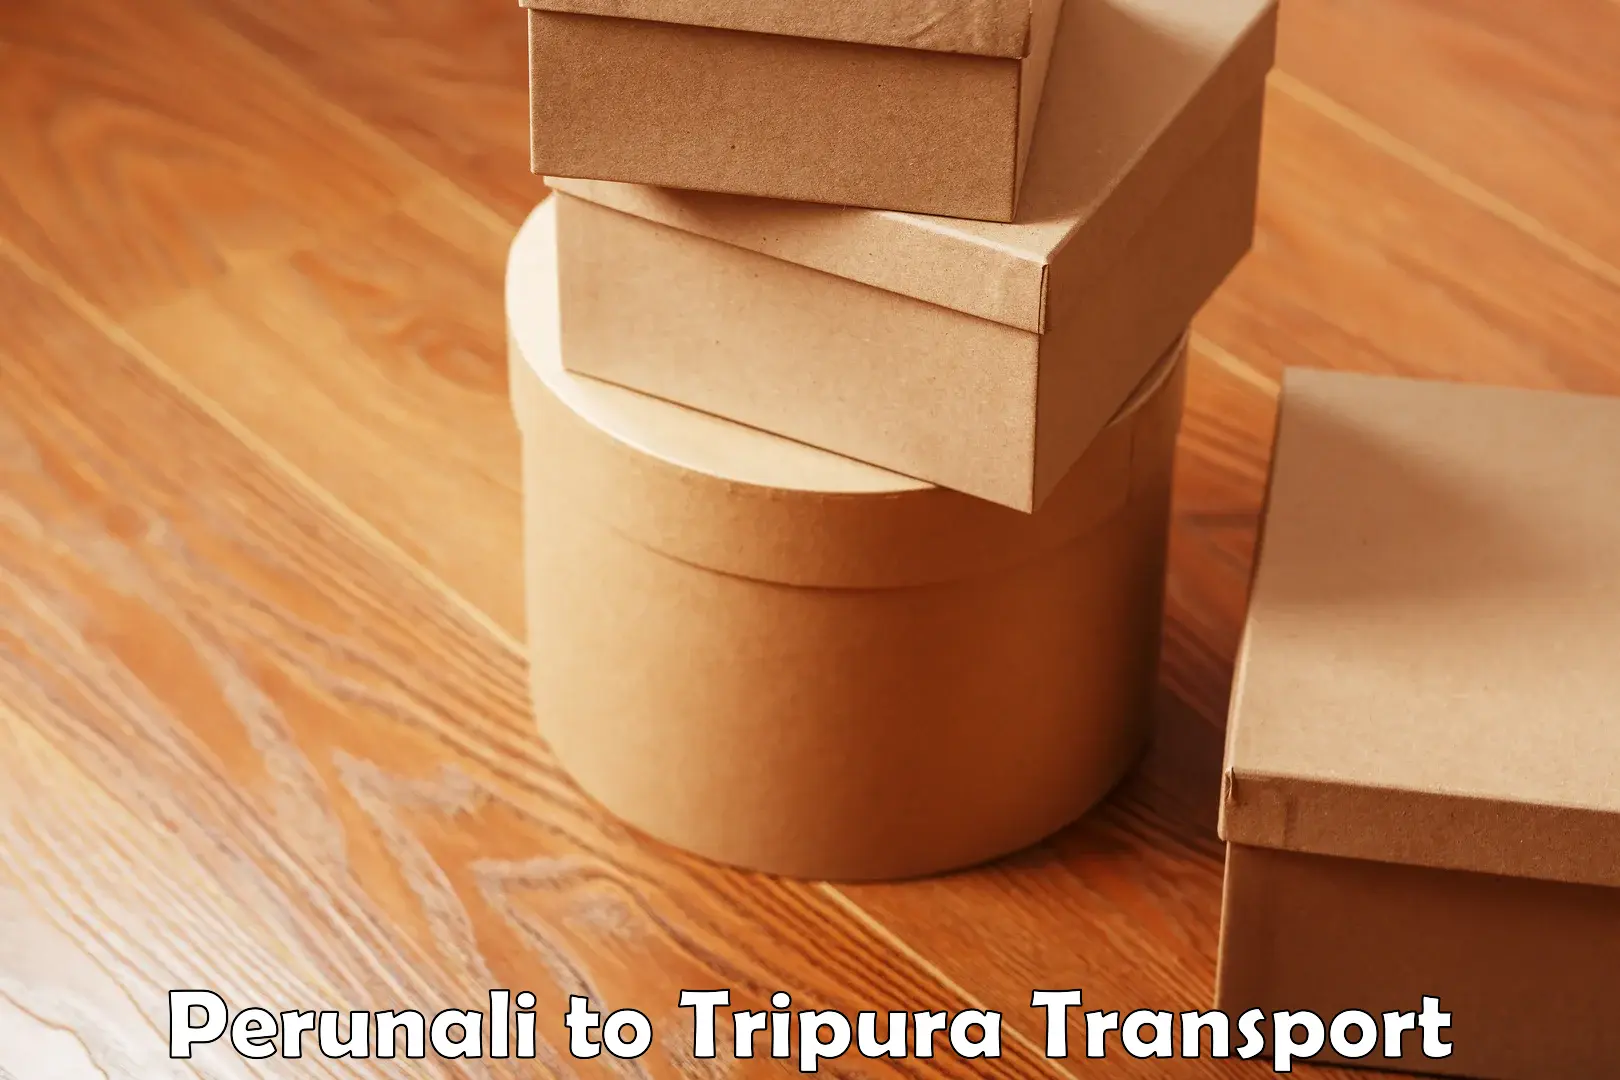 Furniture transport service Perunali to West Tripura